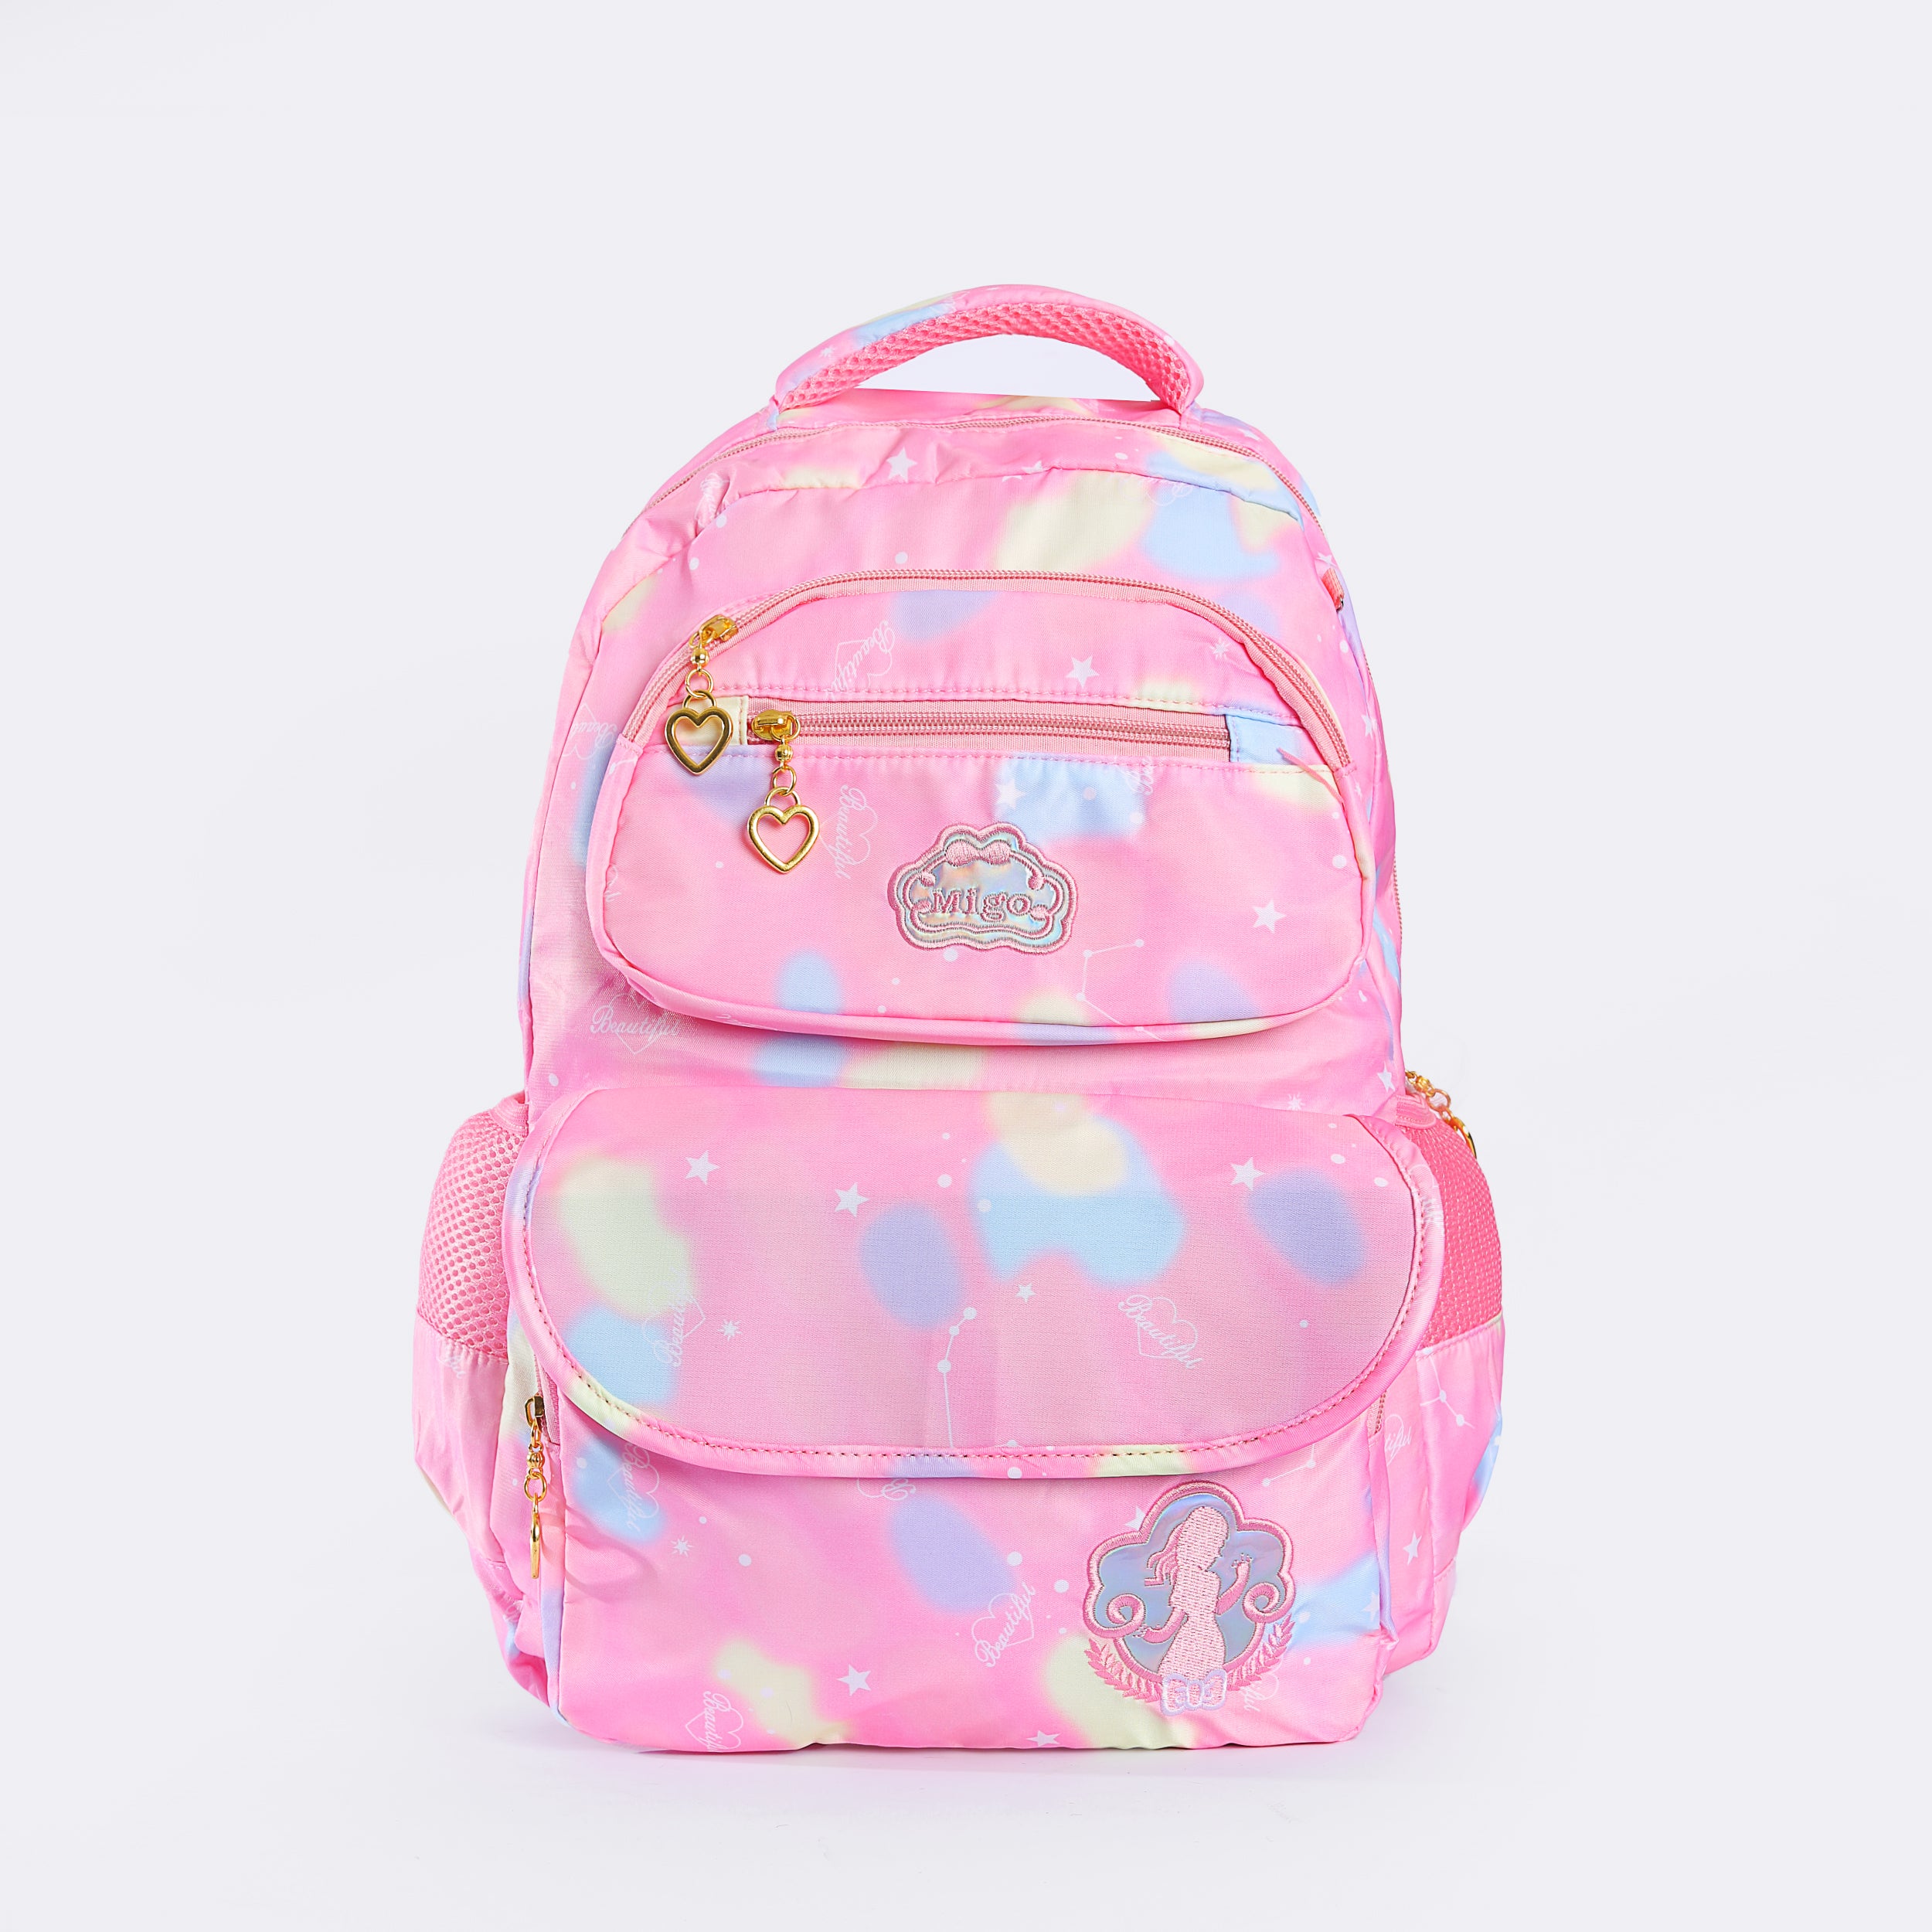 Pink Fantasy School Bag For Kids 18 INCH